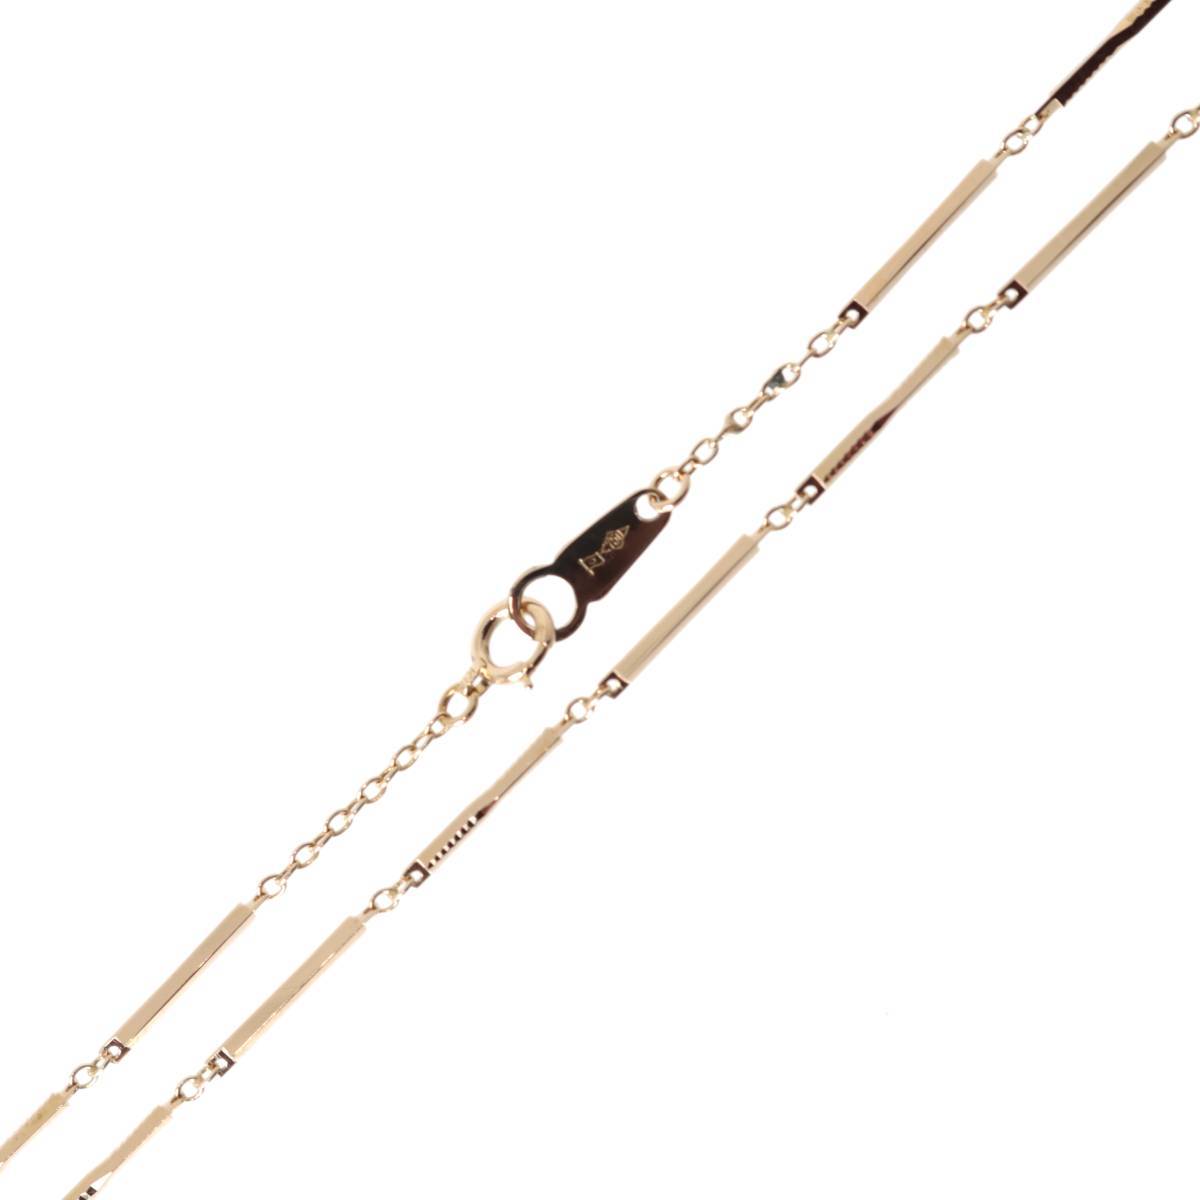 K18/18金 切子風デザインネックレス 首回り42.5cm 5.0g 造幣局検定刻印